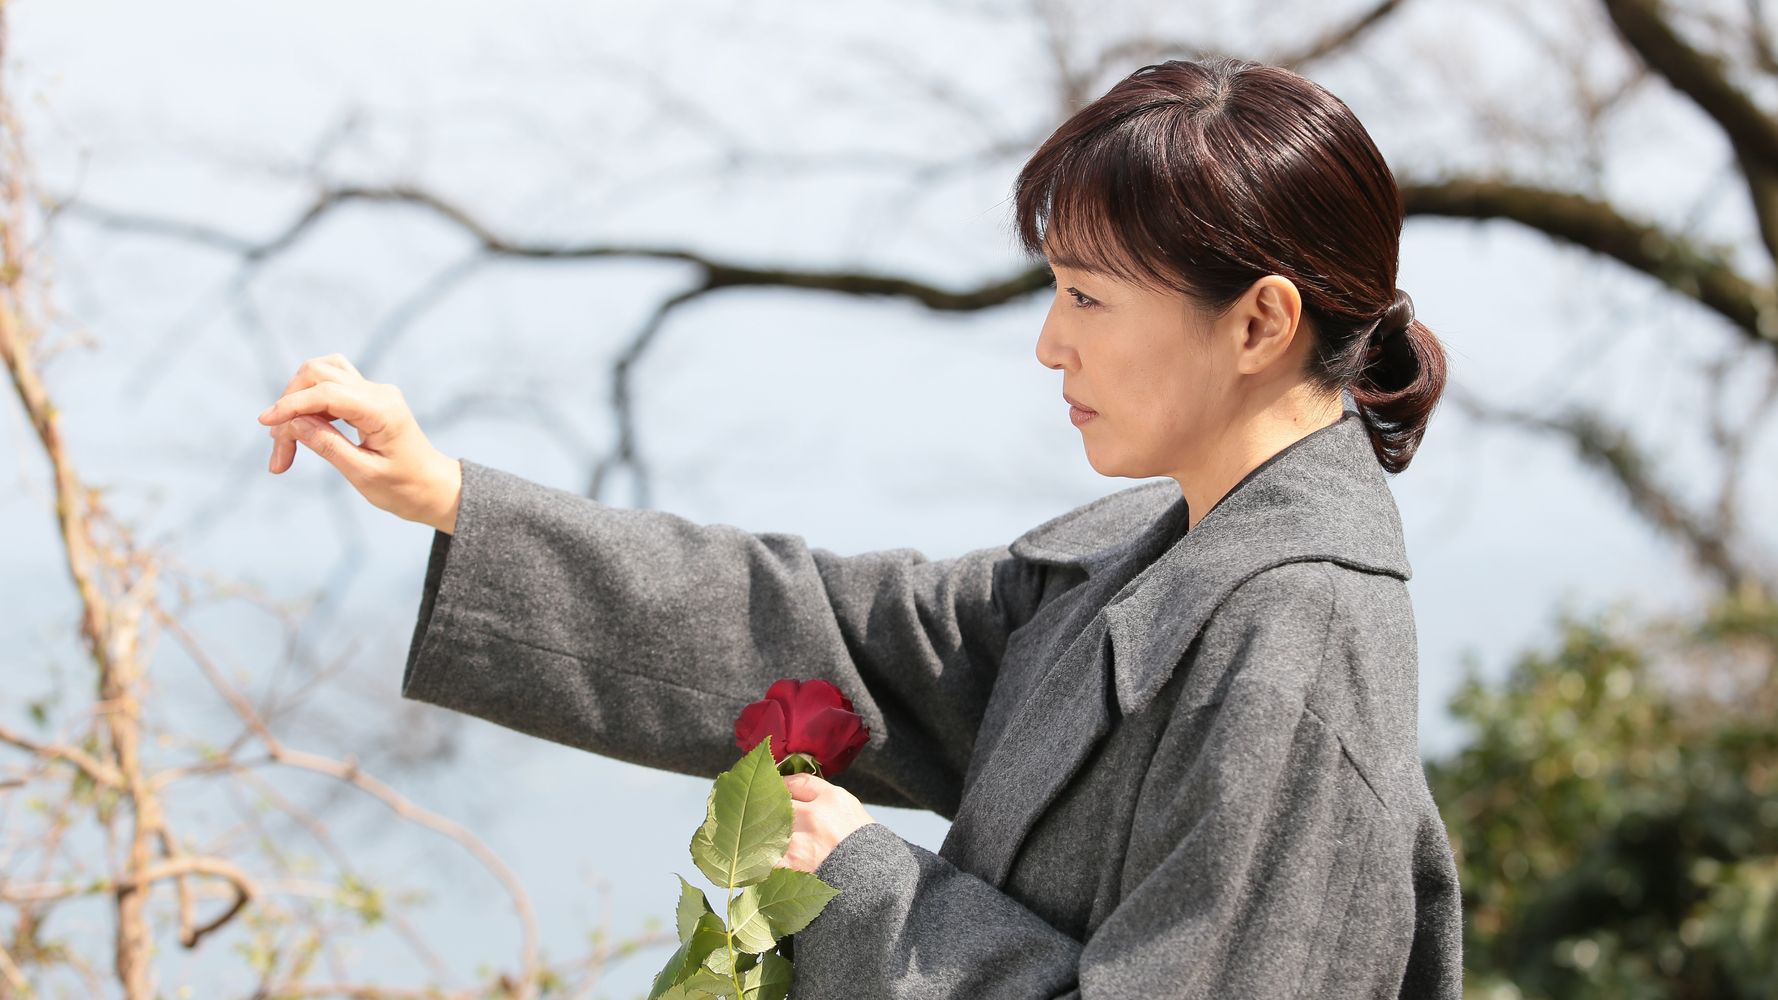 高島礼子、納棺師役で主演 映画「おみおくり」、2018年3月公開 社会の